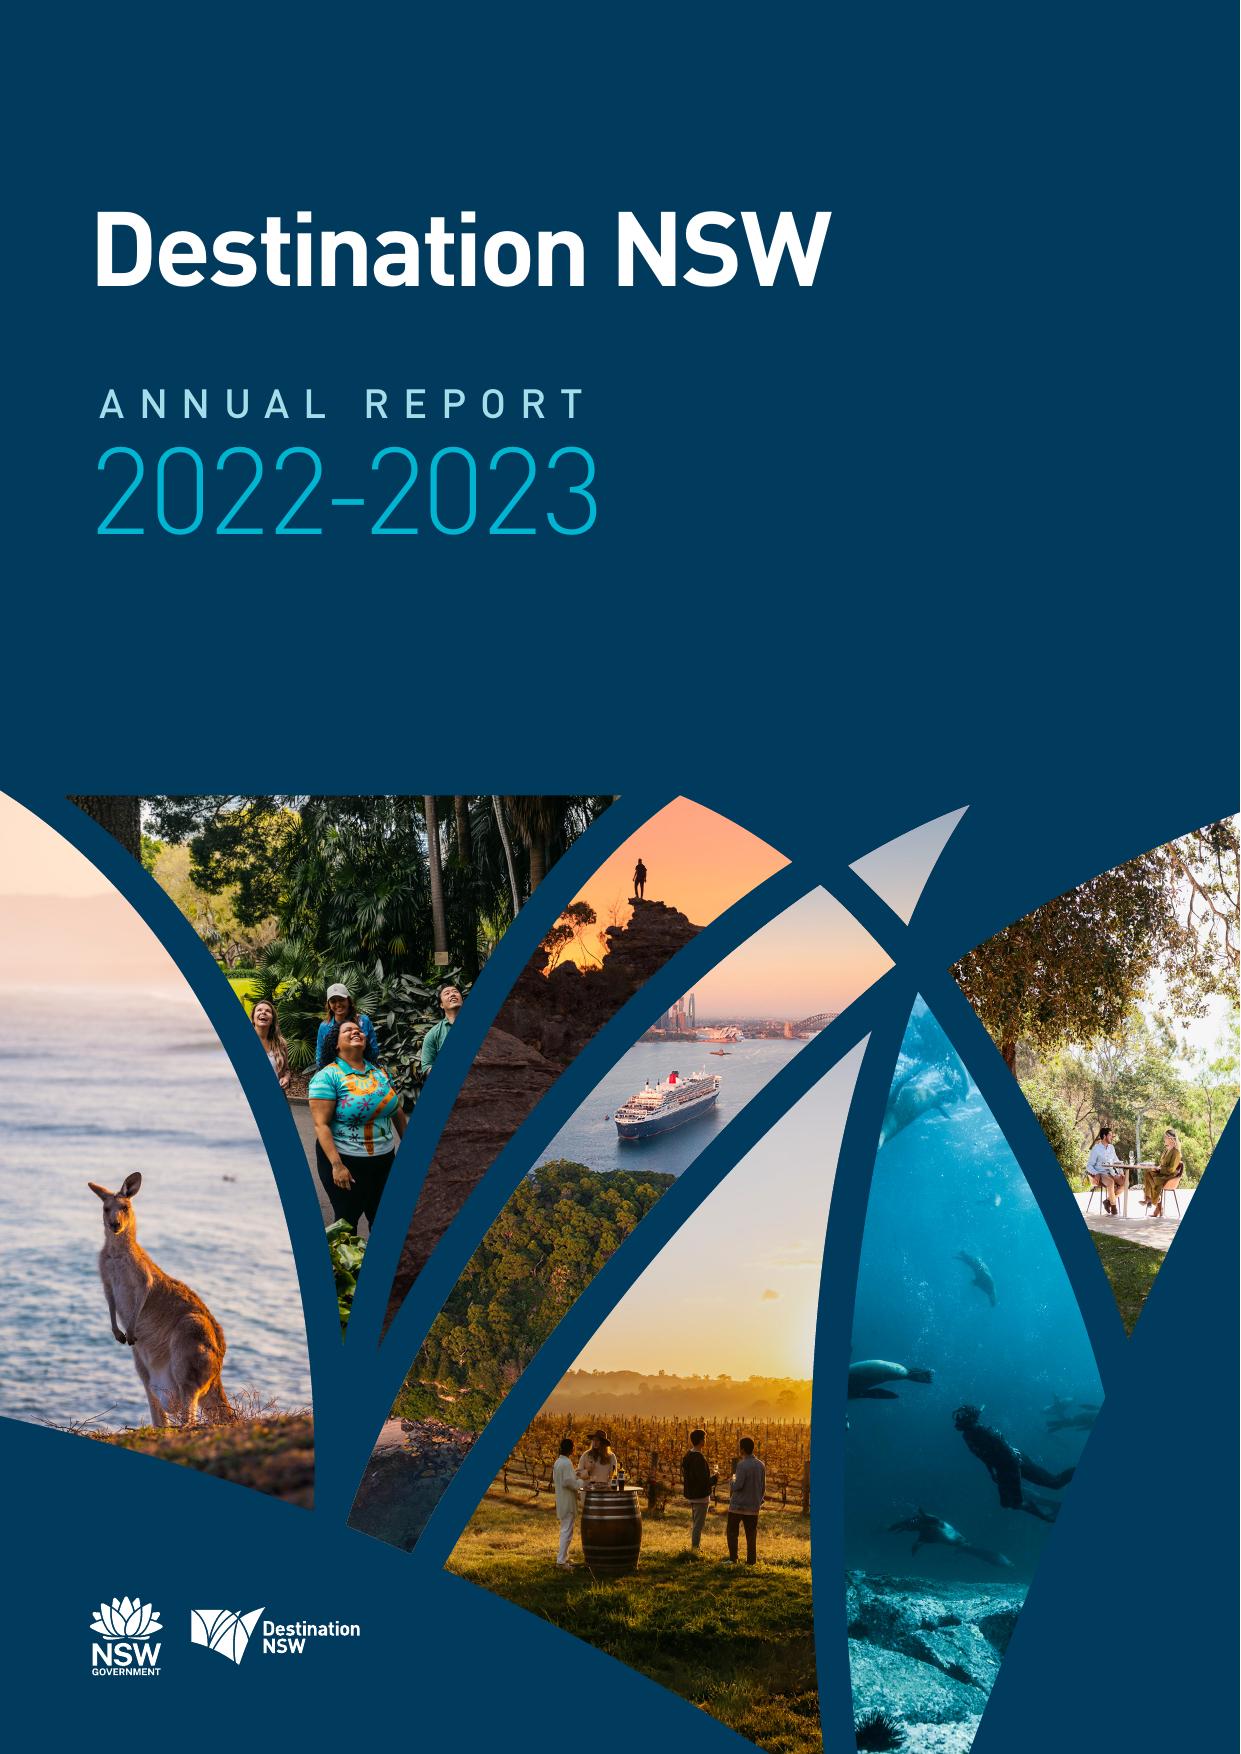 DESTINATIONNSW 2022 Annual Report